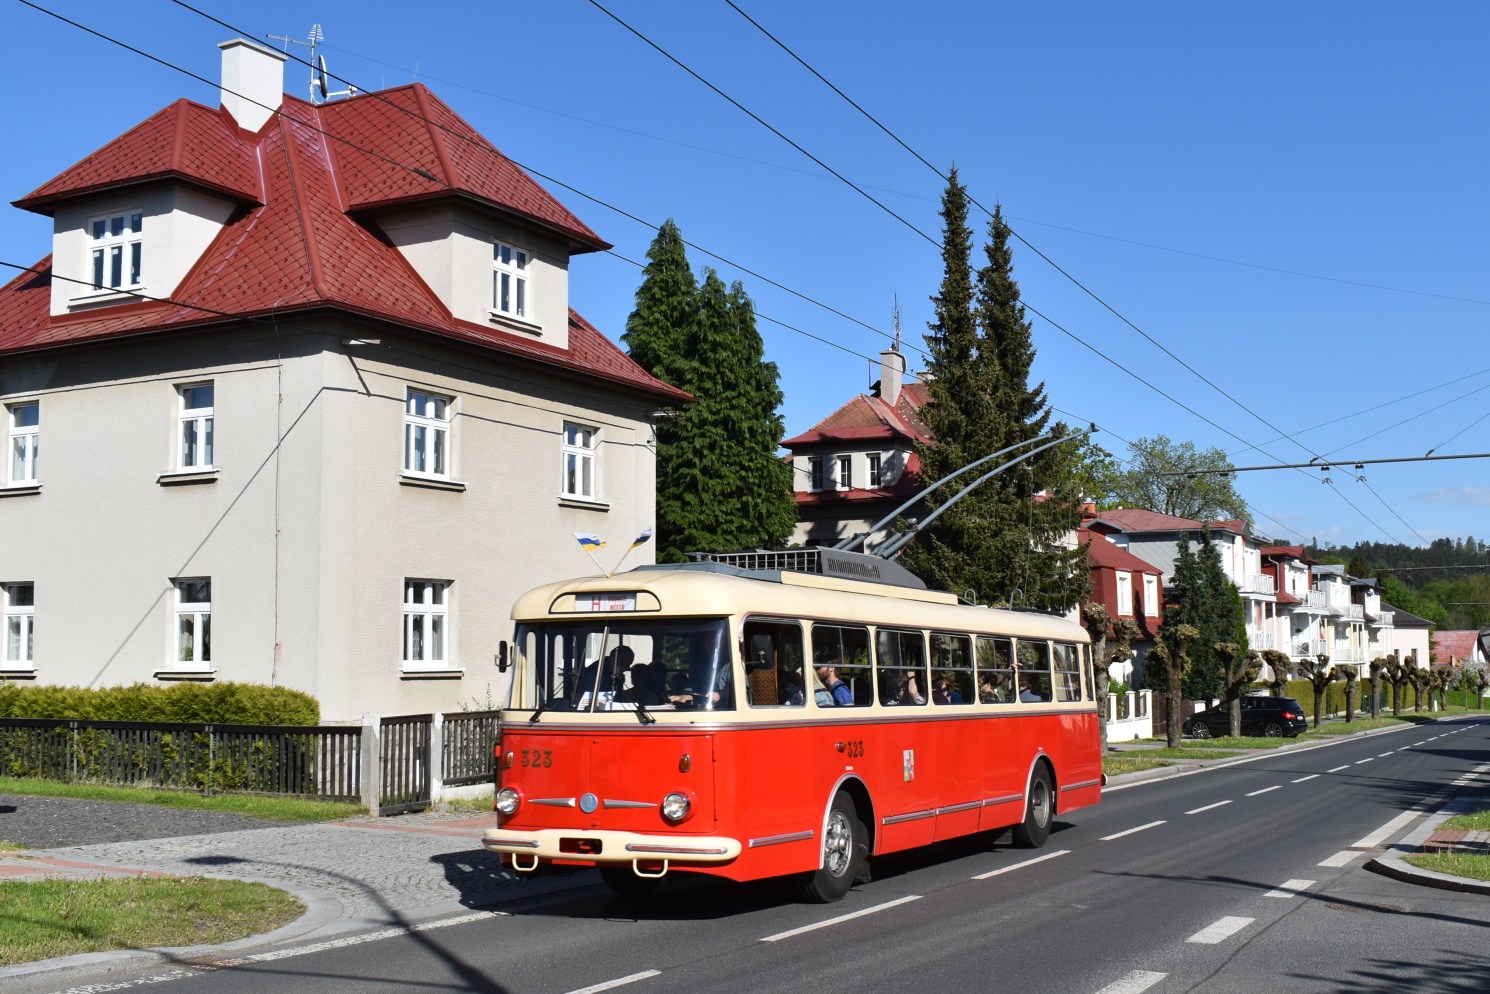 Пльзень, Škoda 9TrHT26 № 323; Марианске-Лазне — Троллейбусы из других городов